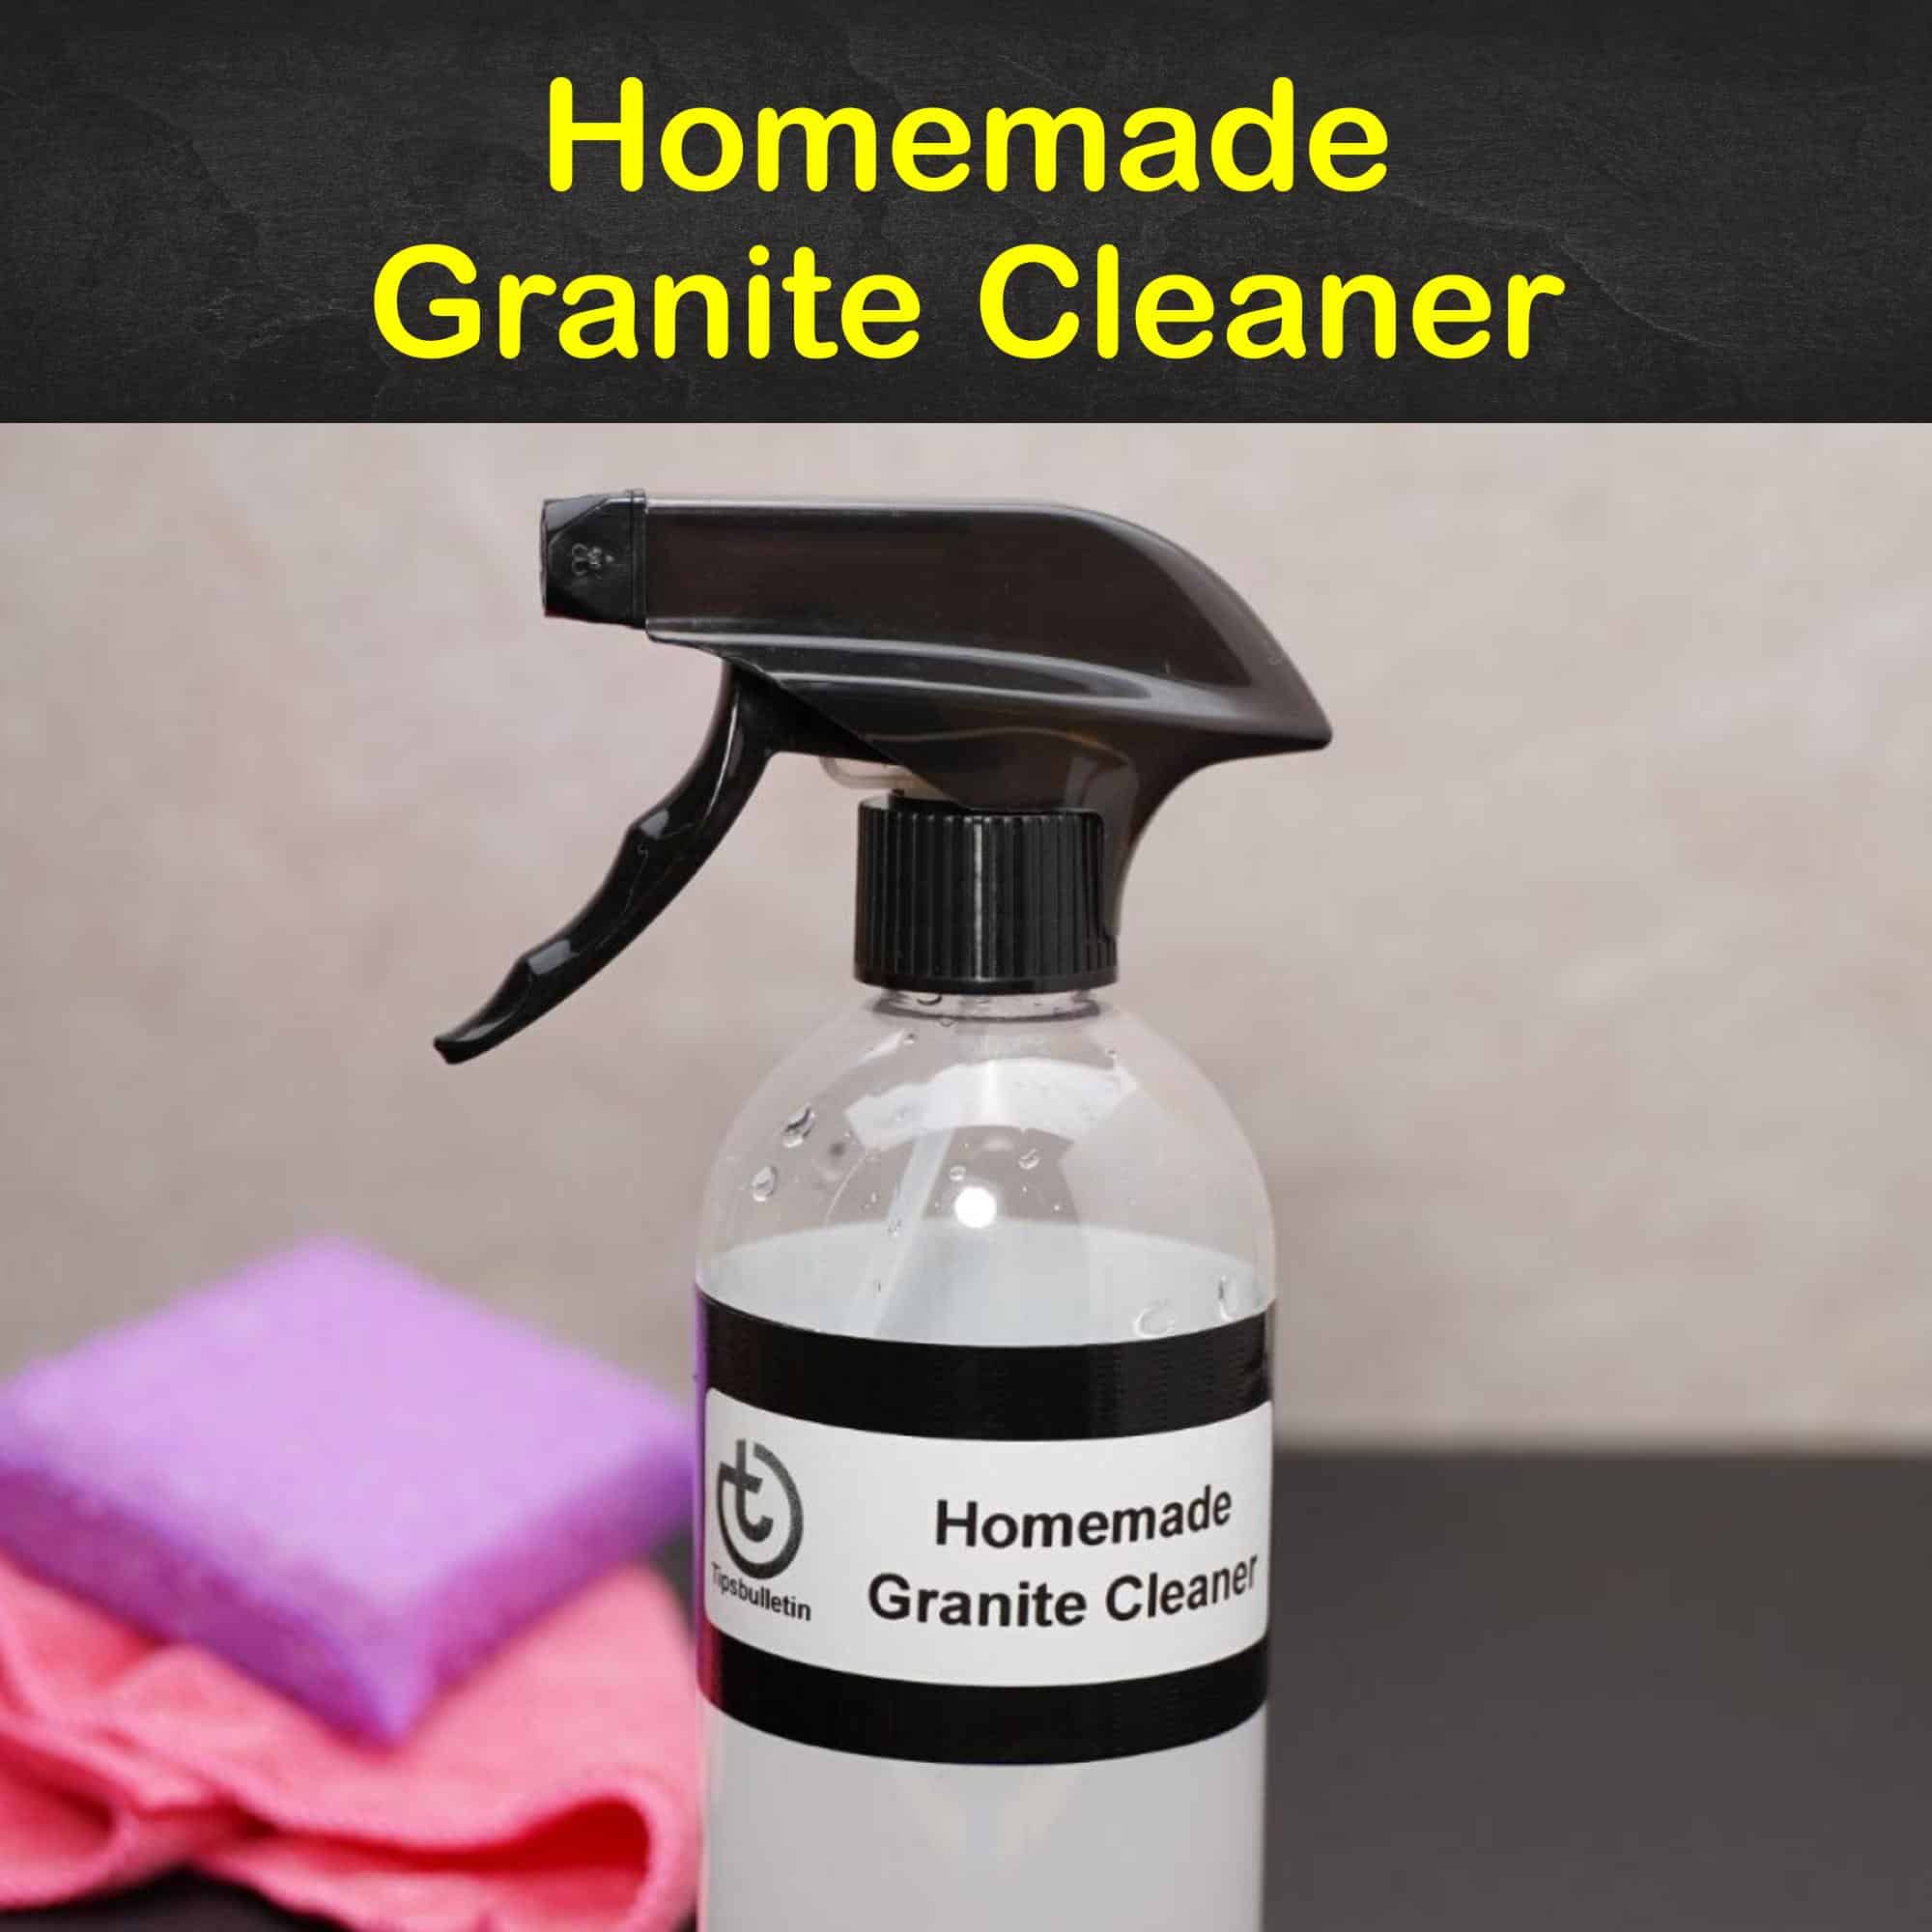 Homemade Granite Cleaner